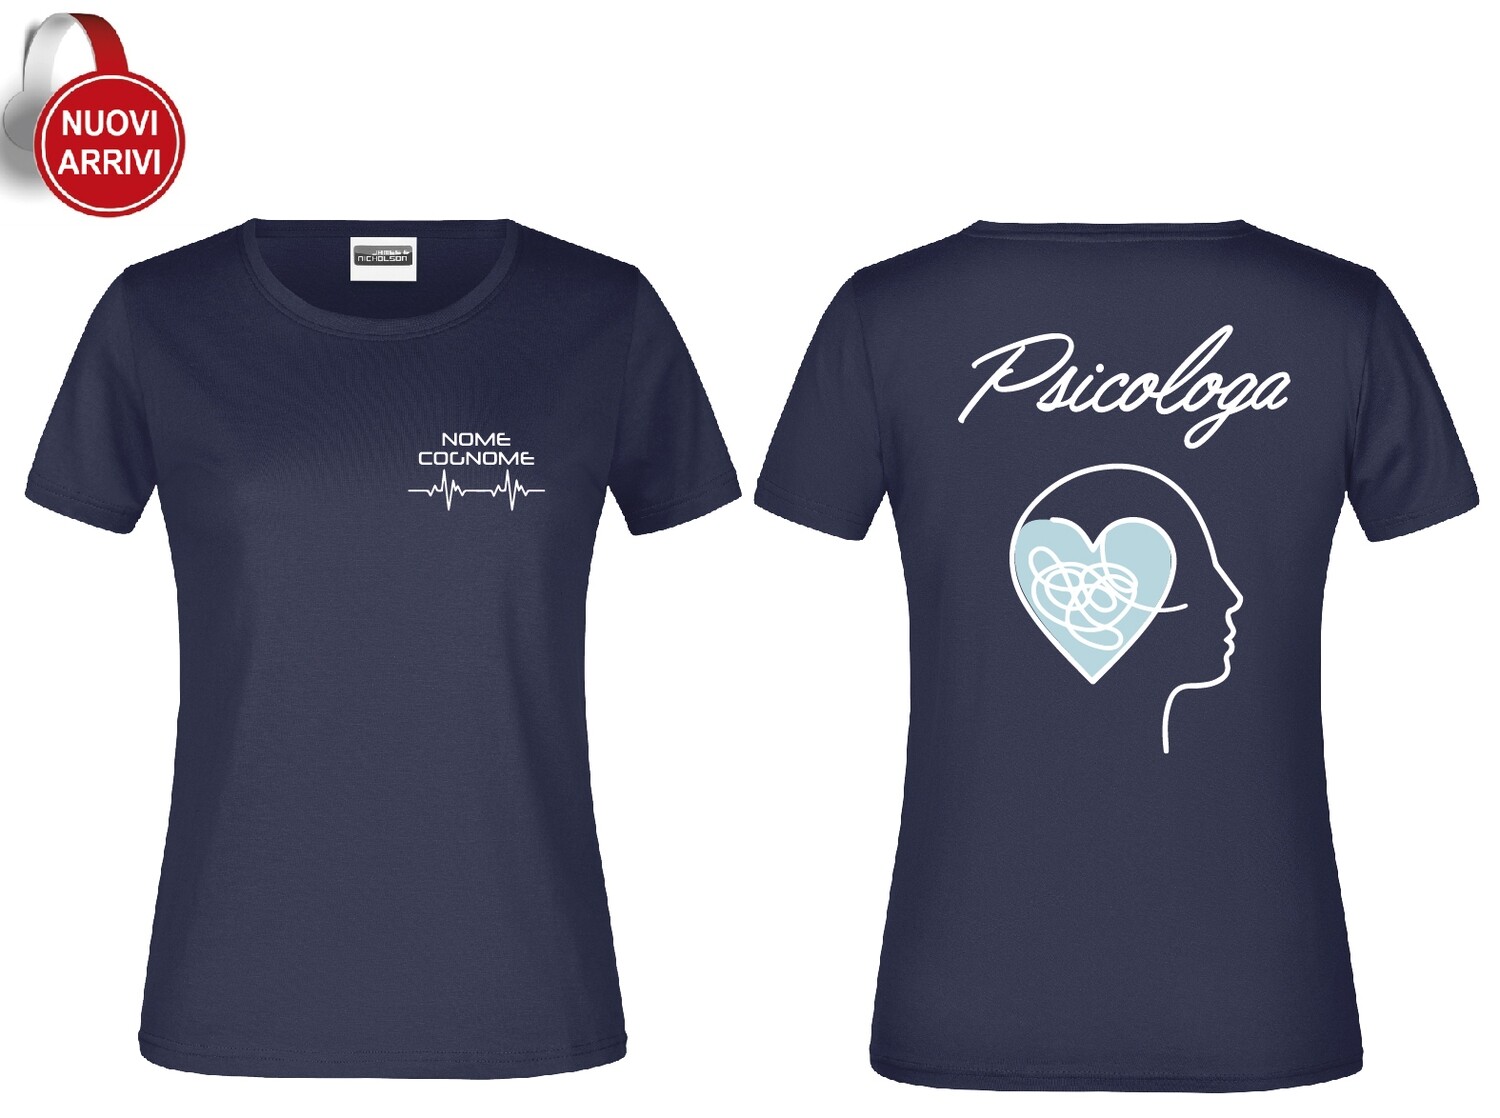 T-shirt sanitaria Psicologa e Psicologo Personalizzata